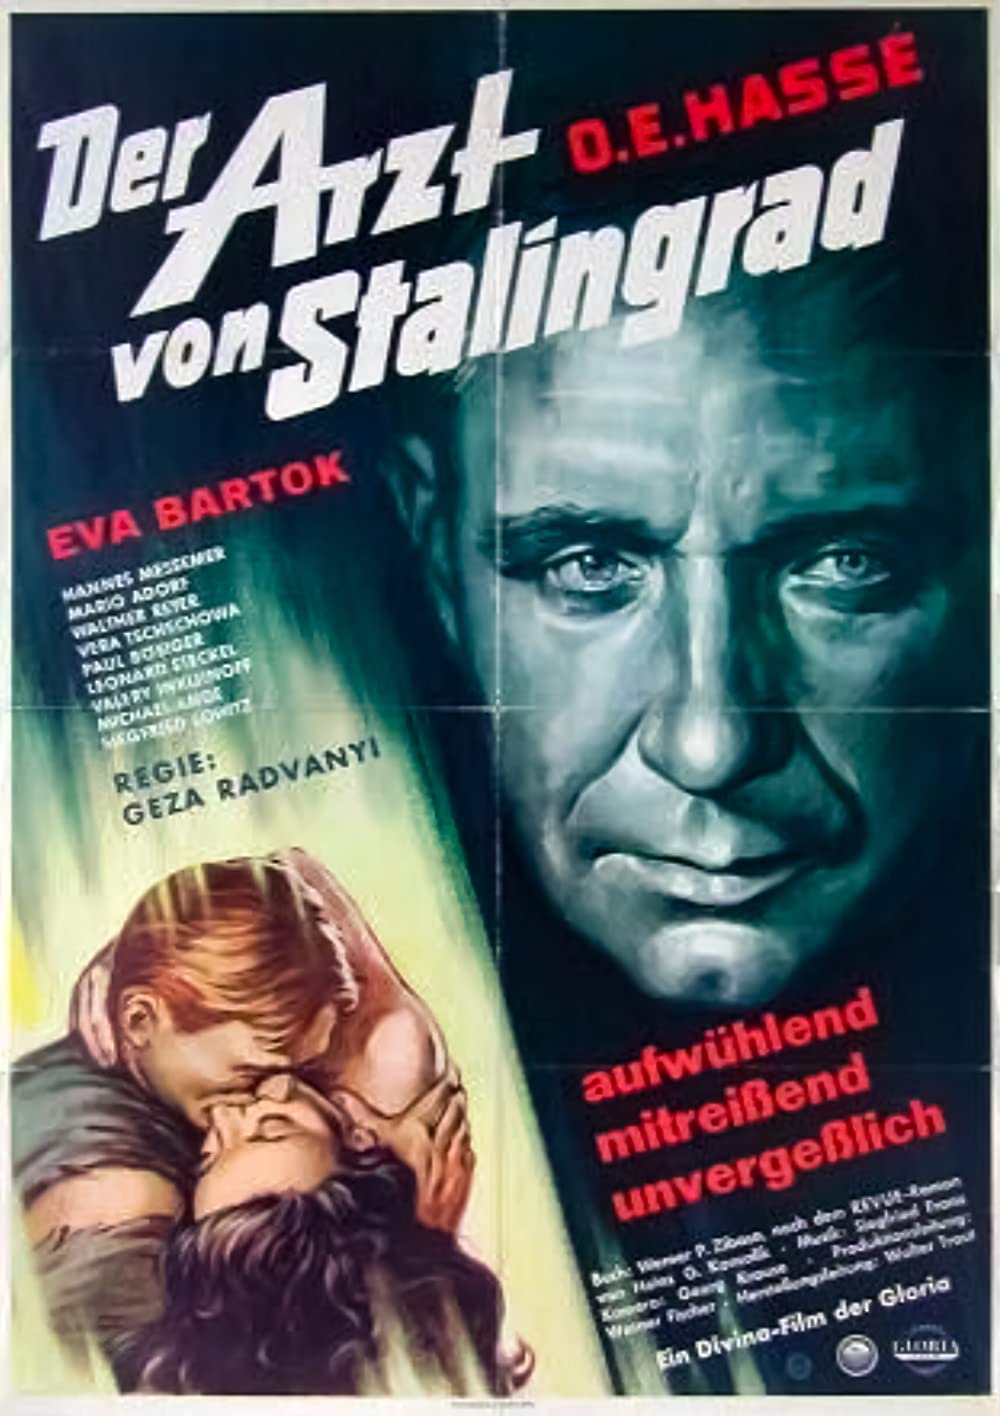 Filmbeschreibung zu Der Arzt von Stalingrad